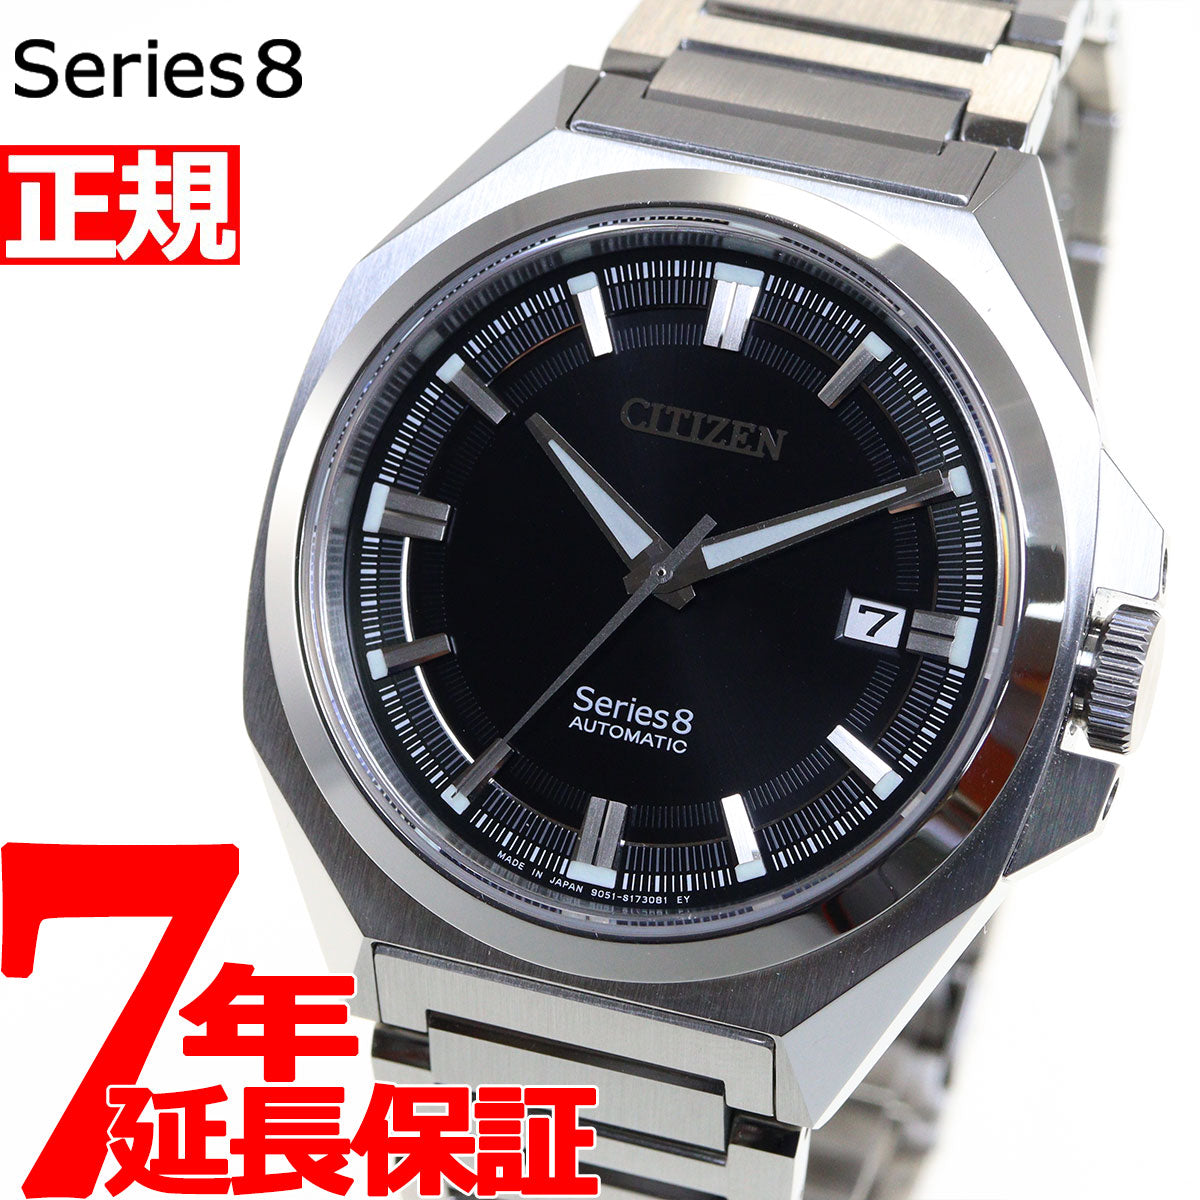 シチズン CITIZEN 腕時計 メンズ NB6010-81E シリーズエイト 831 メカニカル Series 8 831 Mechanical 自動巻き（951/手巻き付） ブラックxシルバー アナログ表示